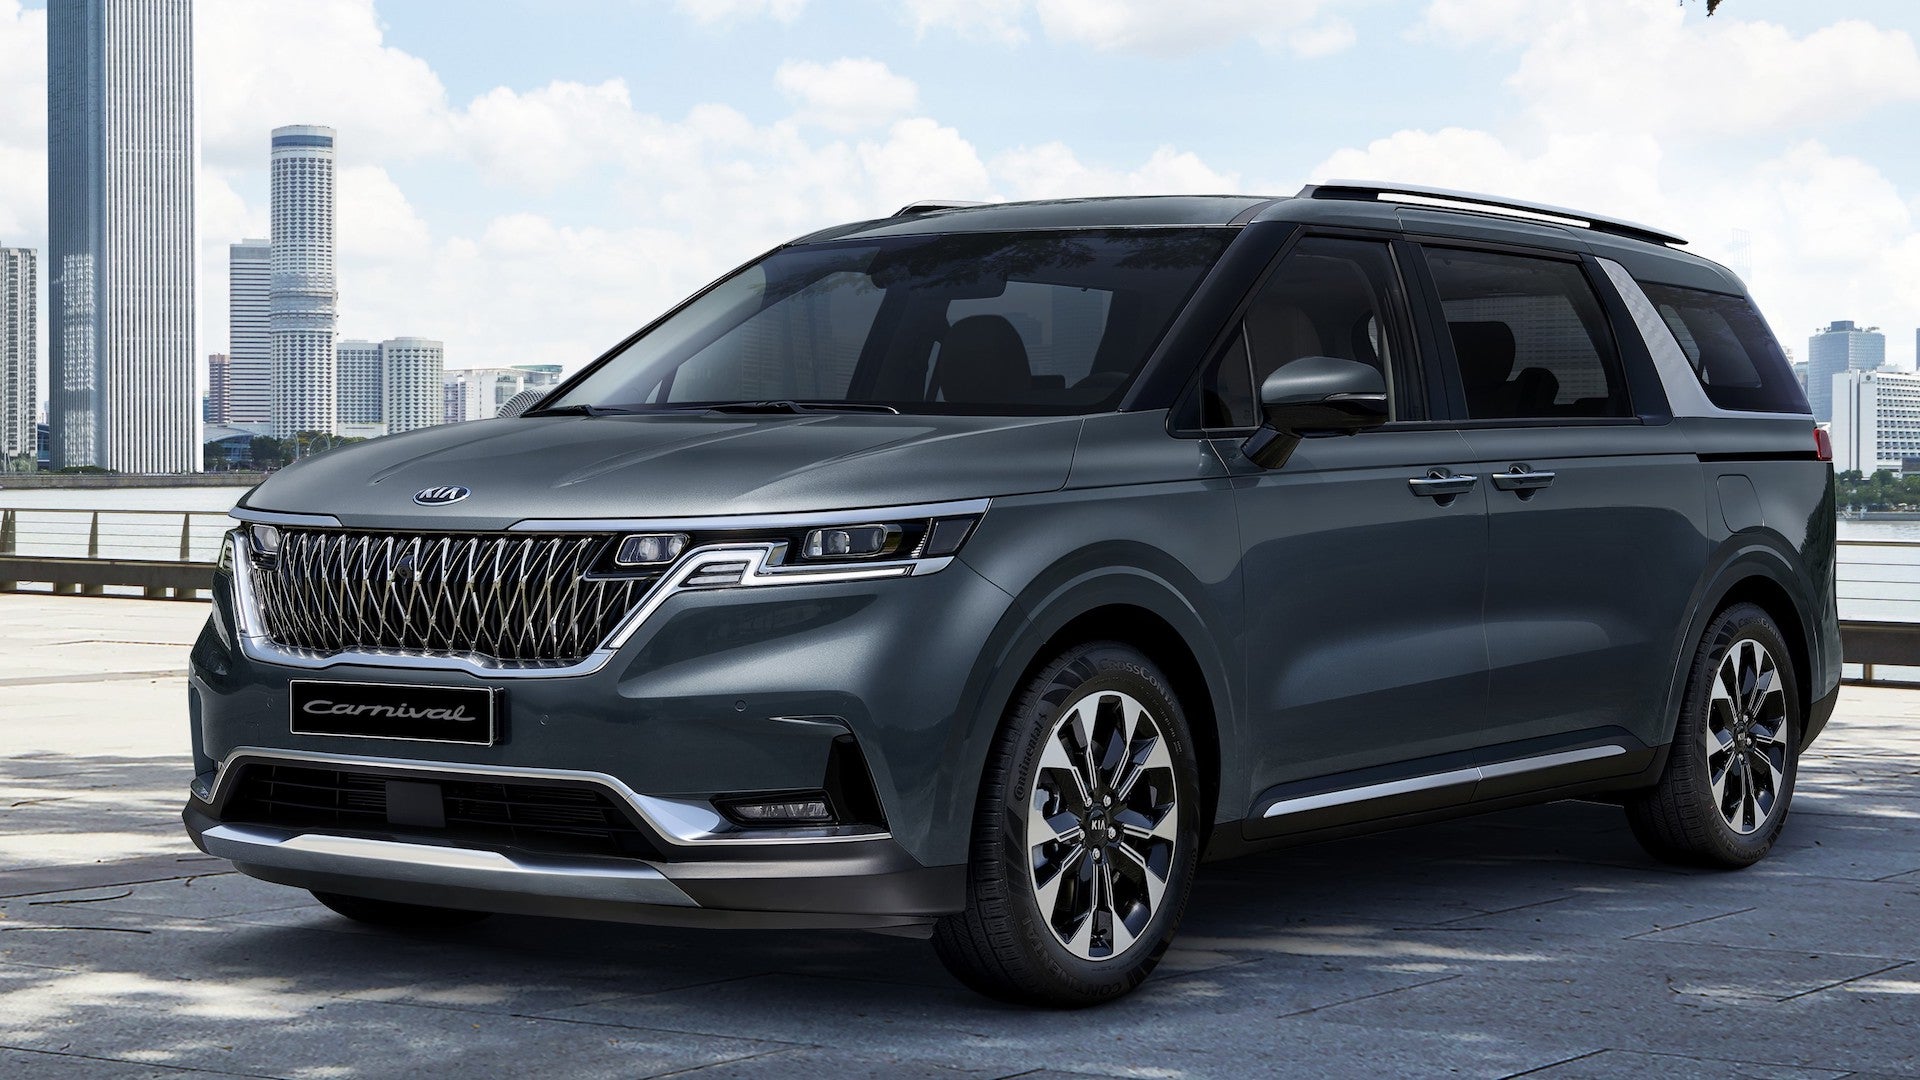 2021 Kia Sedona Minivan Morphs Into SUV-Wannabe ‘Grand Utility Vehicle’